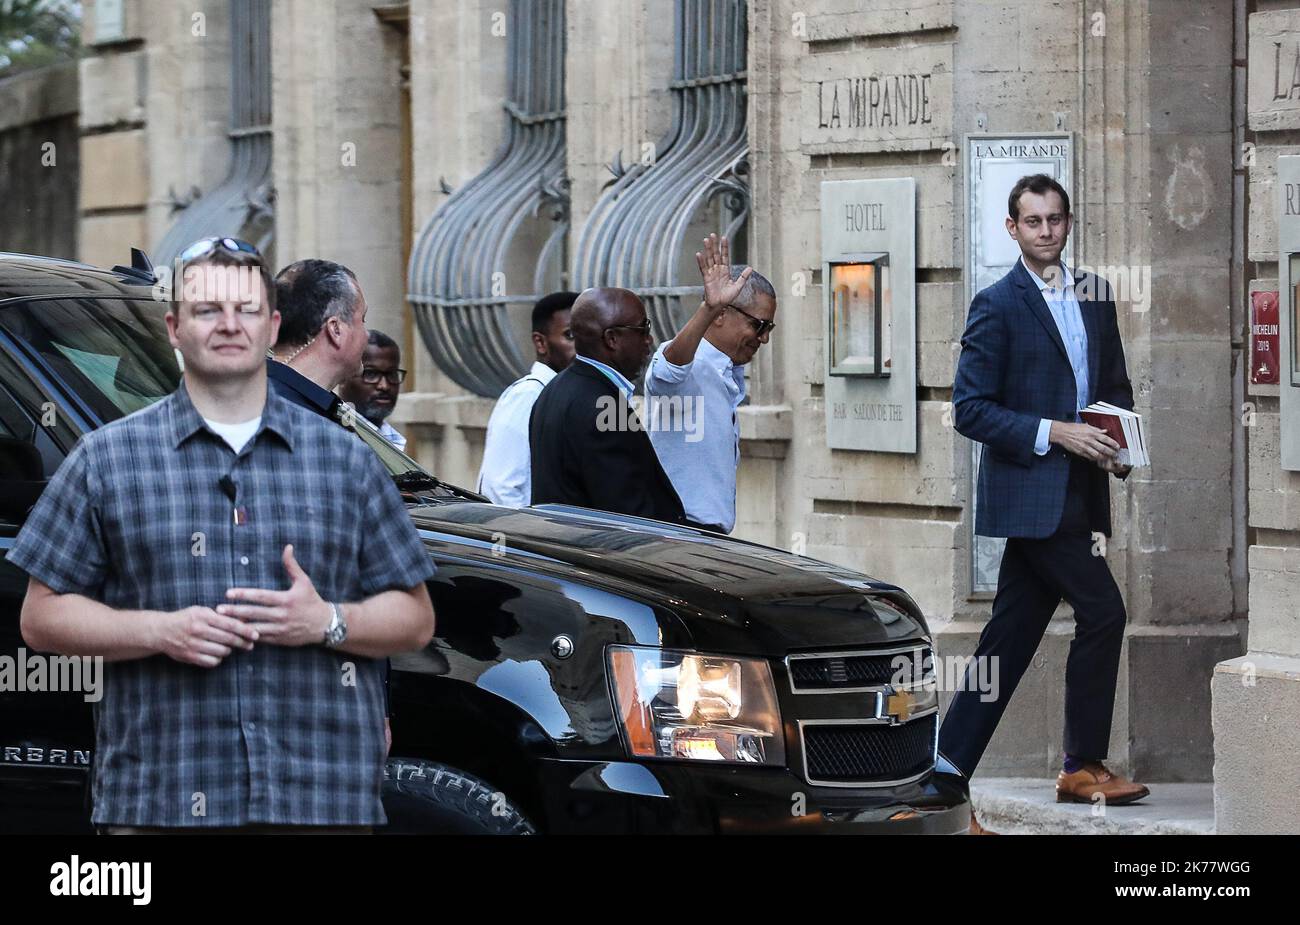 L'ancien président américain Barack Obama et sa famille sont en vacances dans le sud de la France. Leur imposante caravane de voitures est proche du Palais des Papes à Avignon Banque D'Images